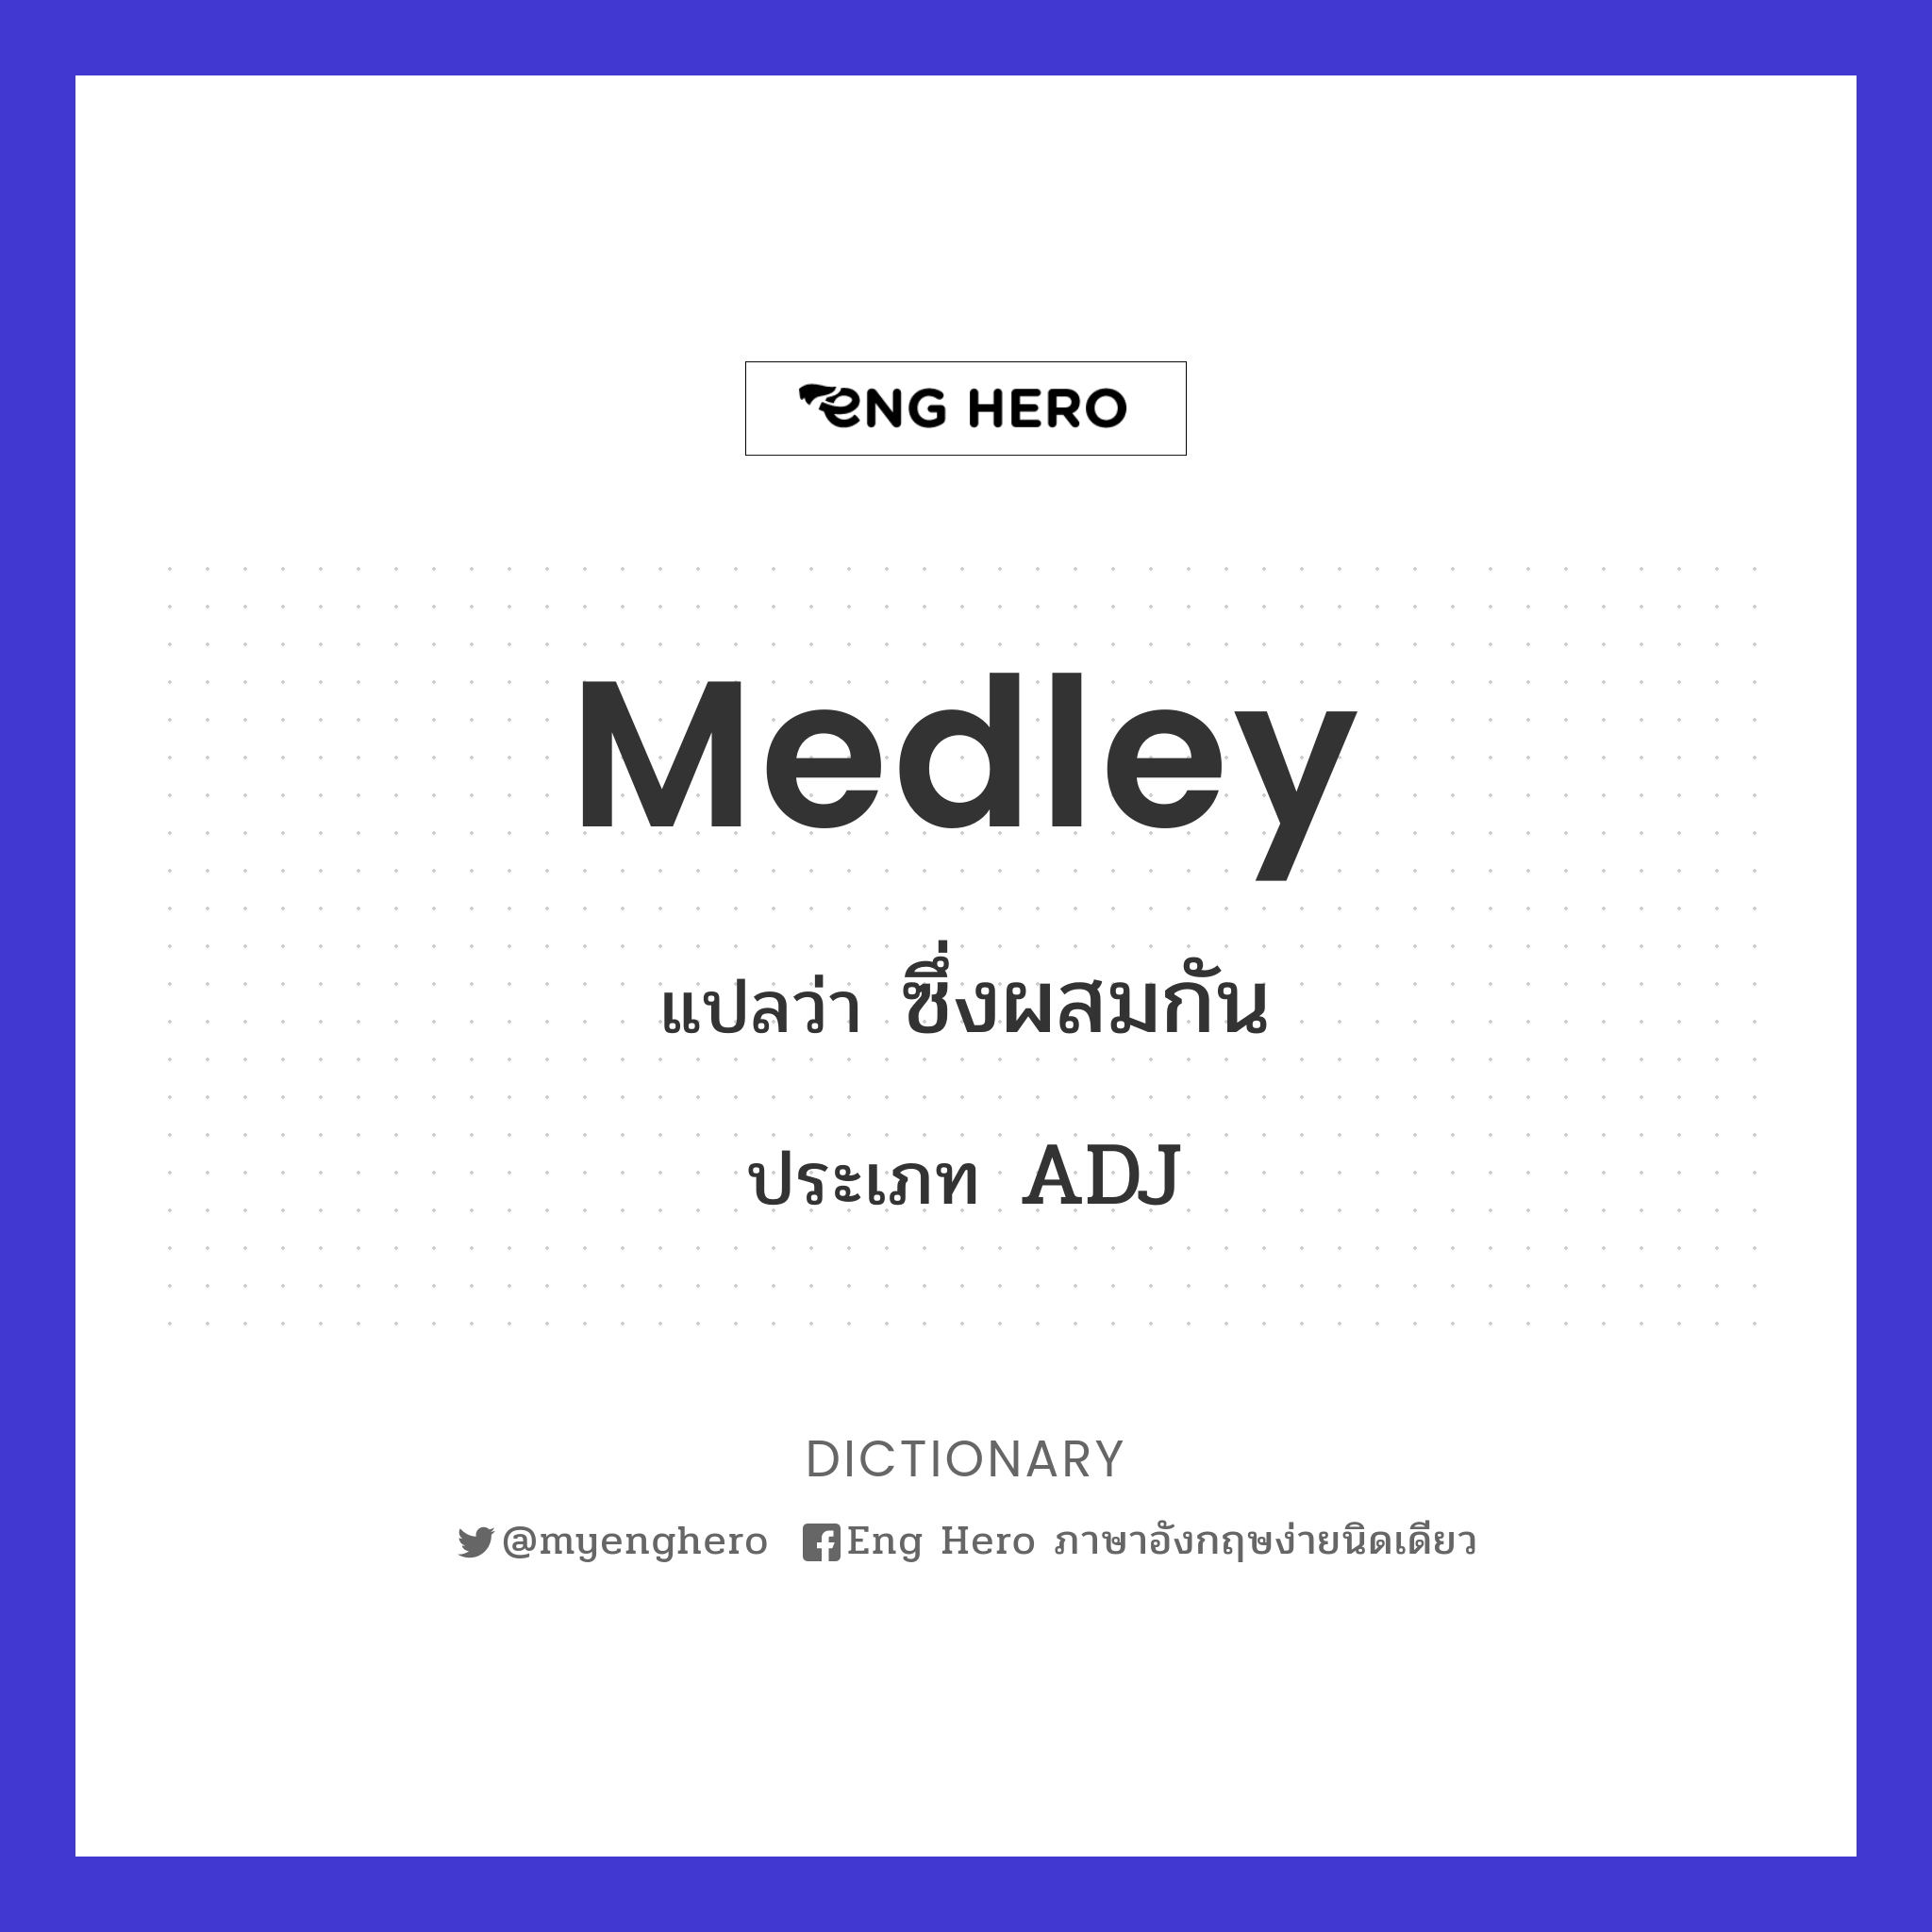 medley